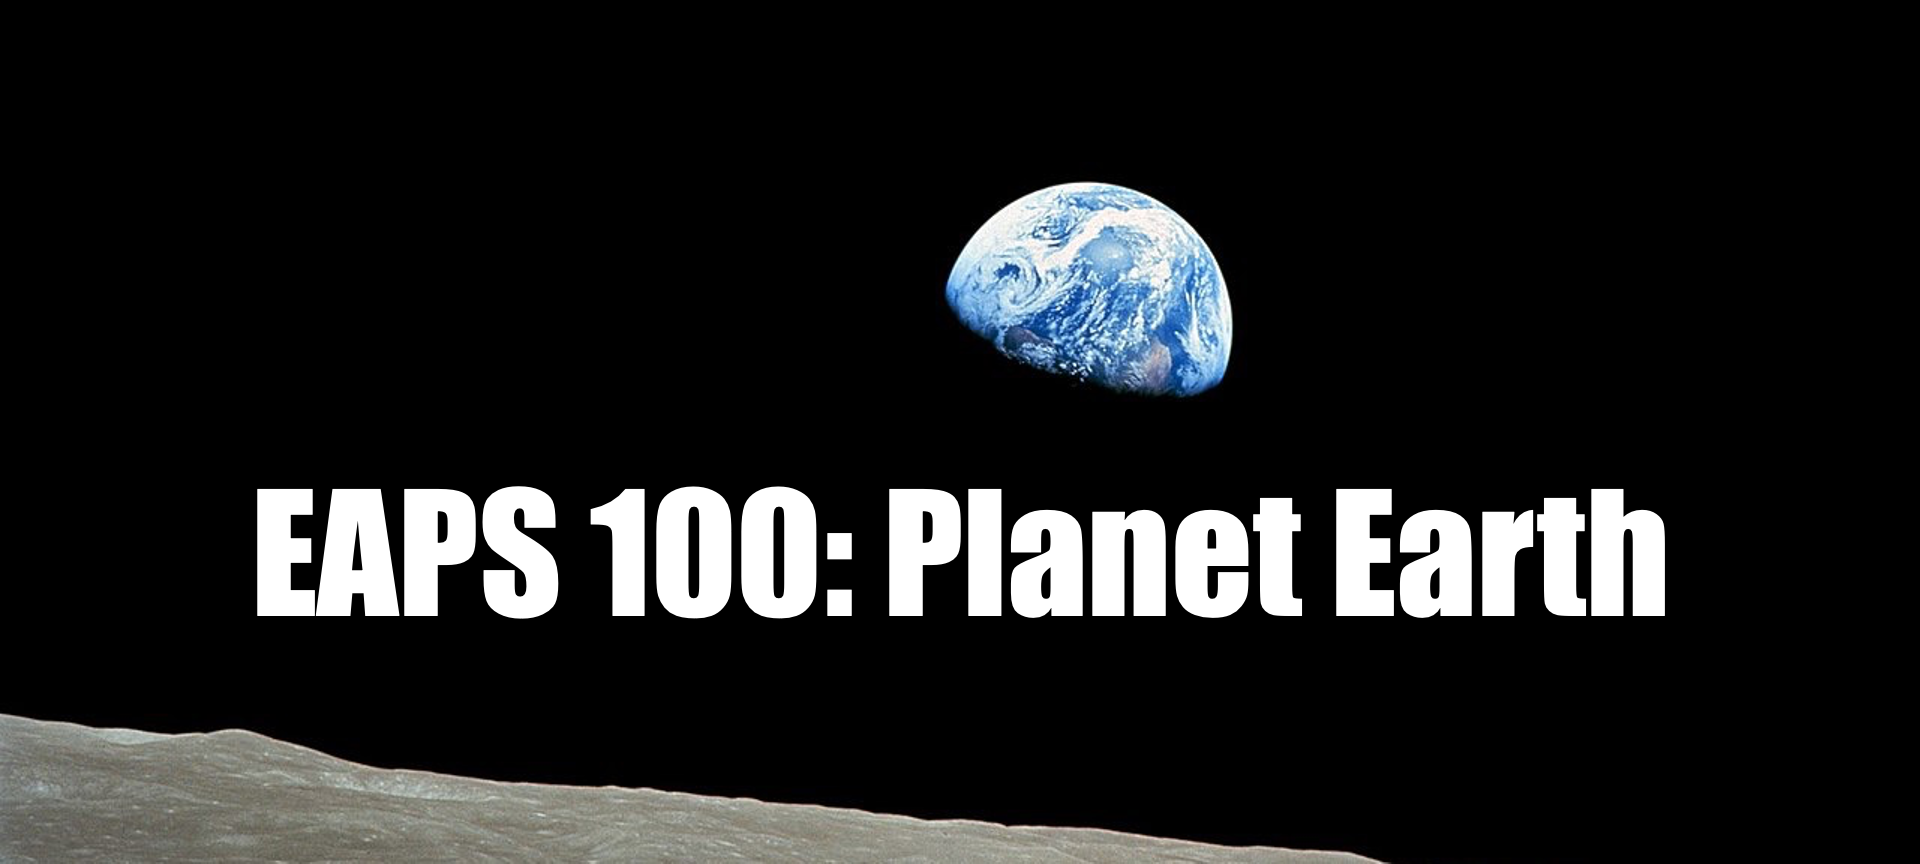 EAPS 100: Planet Earth